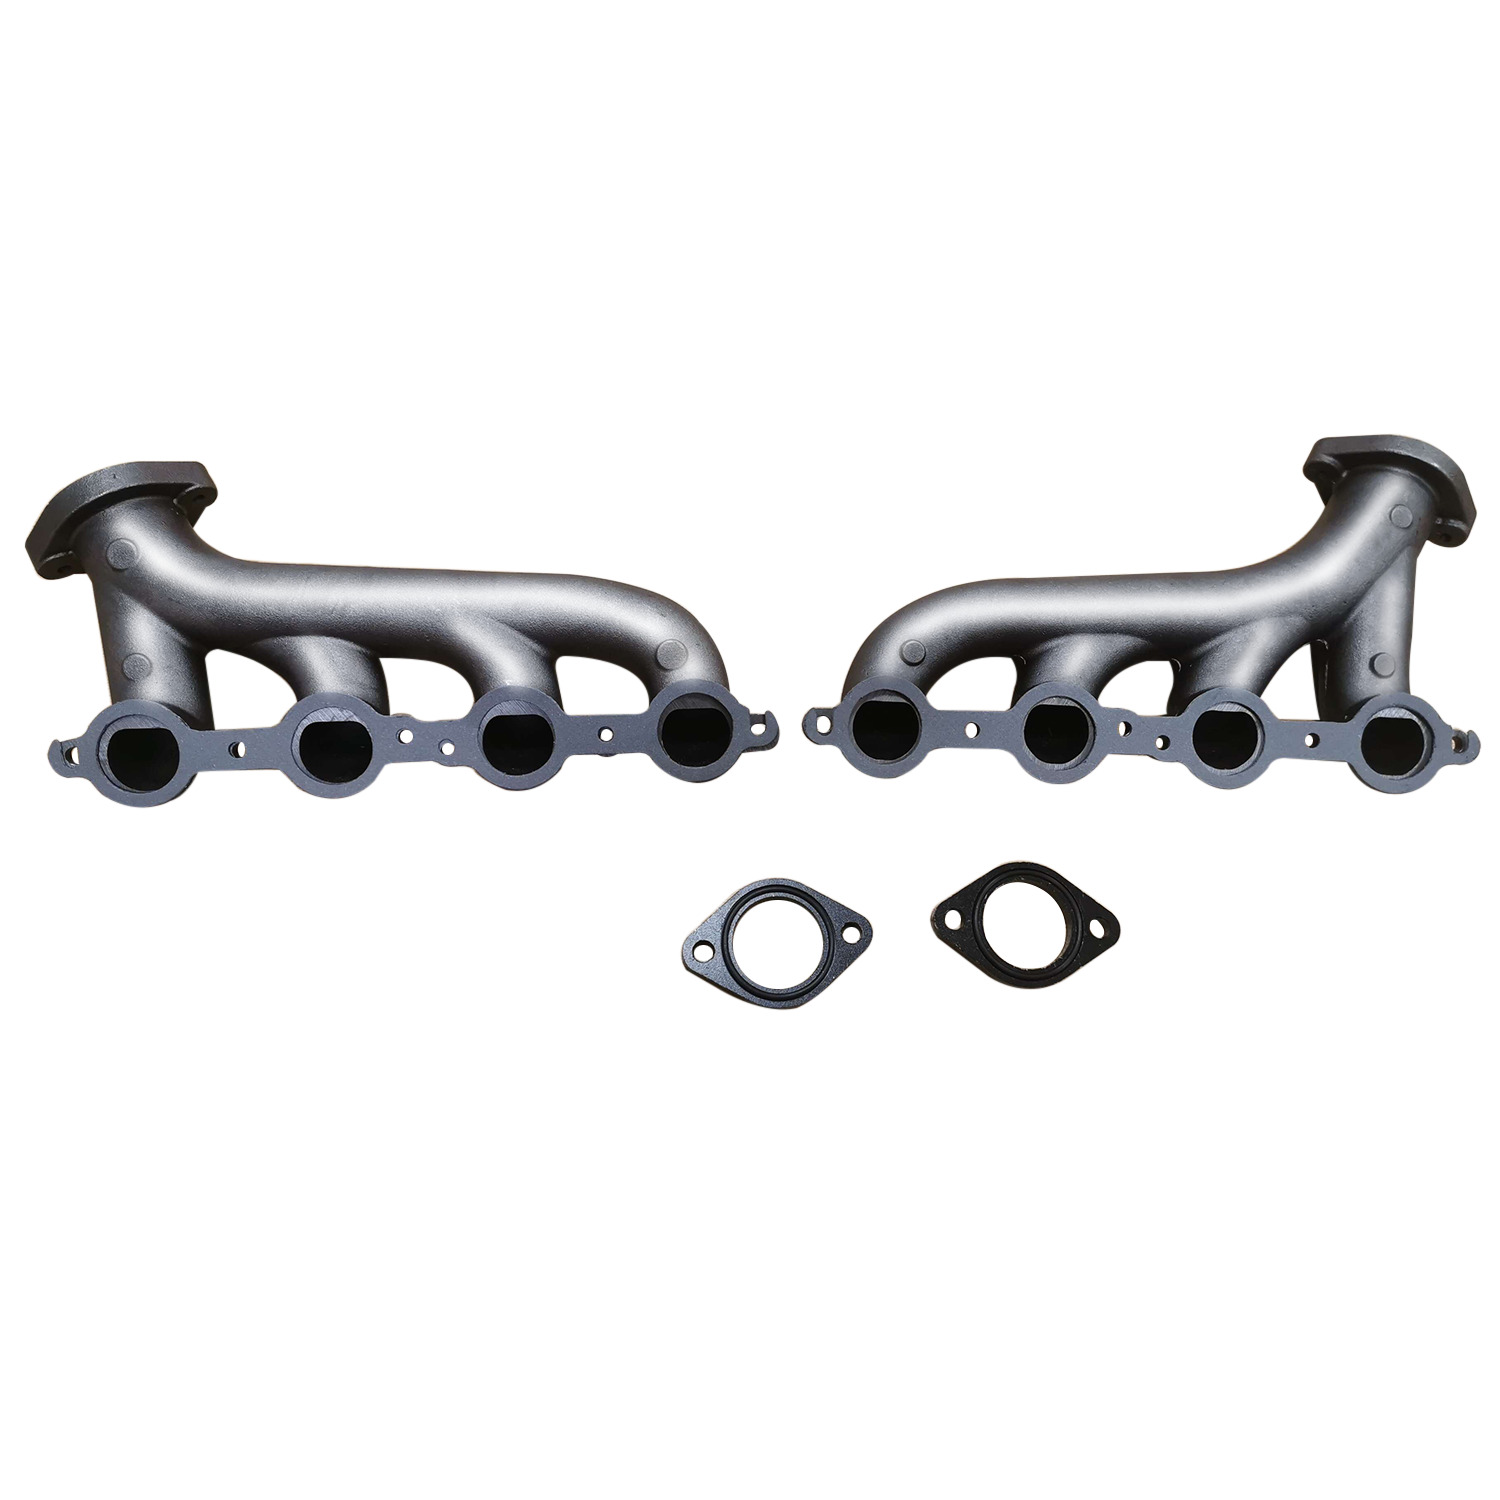 LS Swap Cast Iron Exhaust Manifold Headers For Chevrolet LS1LS2LS3 4.8/5.3L 6.0